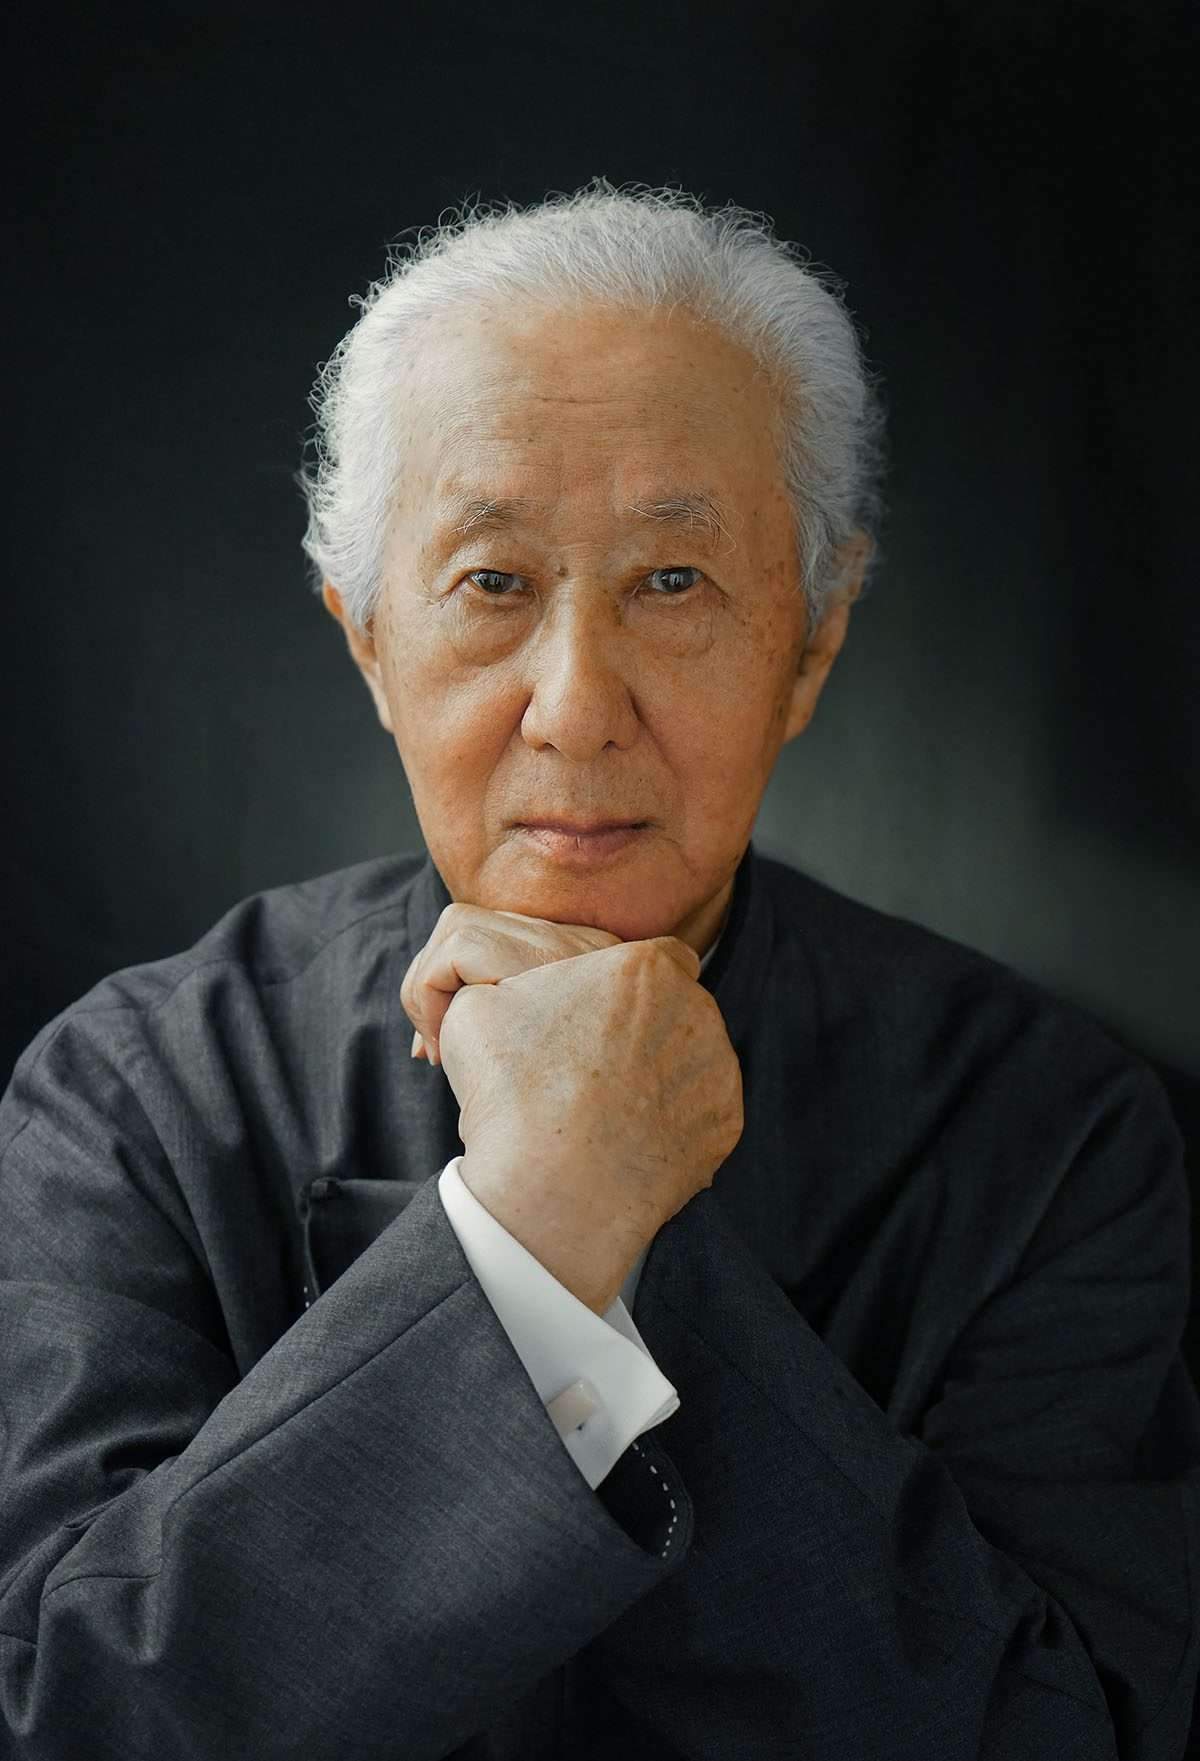 وفاة المعماري الياباني أراتا إيسوزاكي عن عمر يناهز 91 عامًا